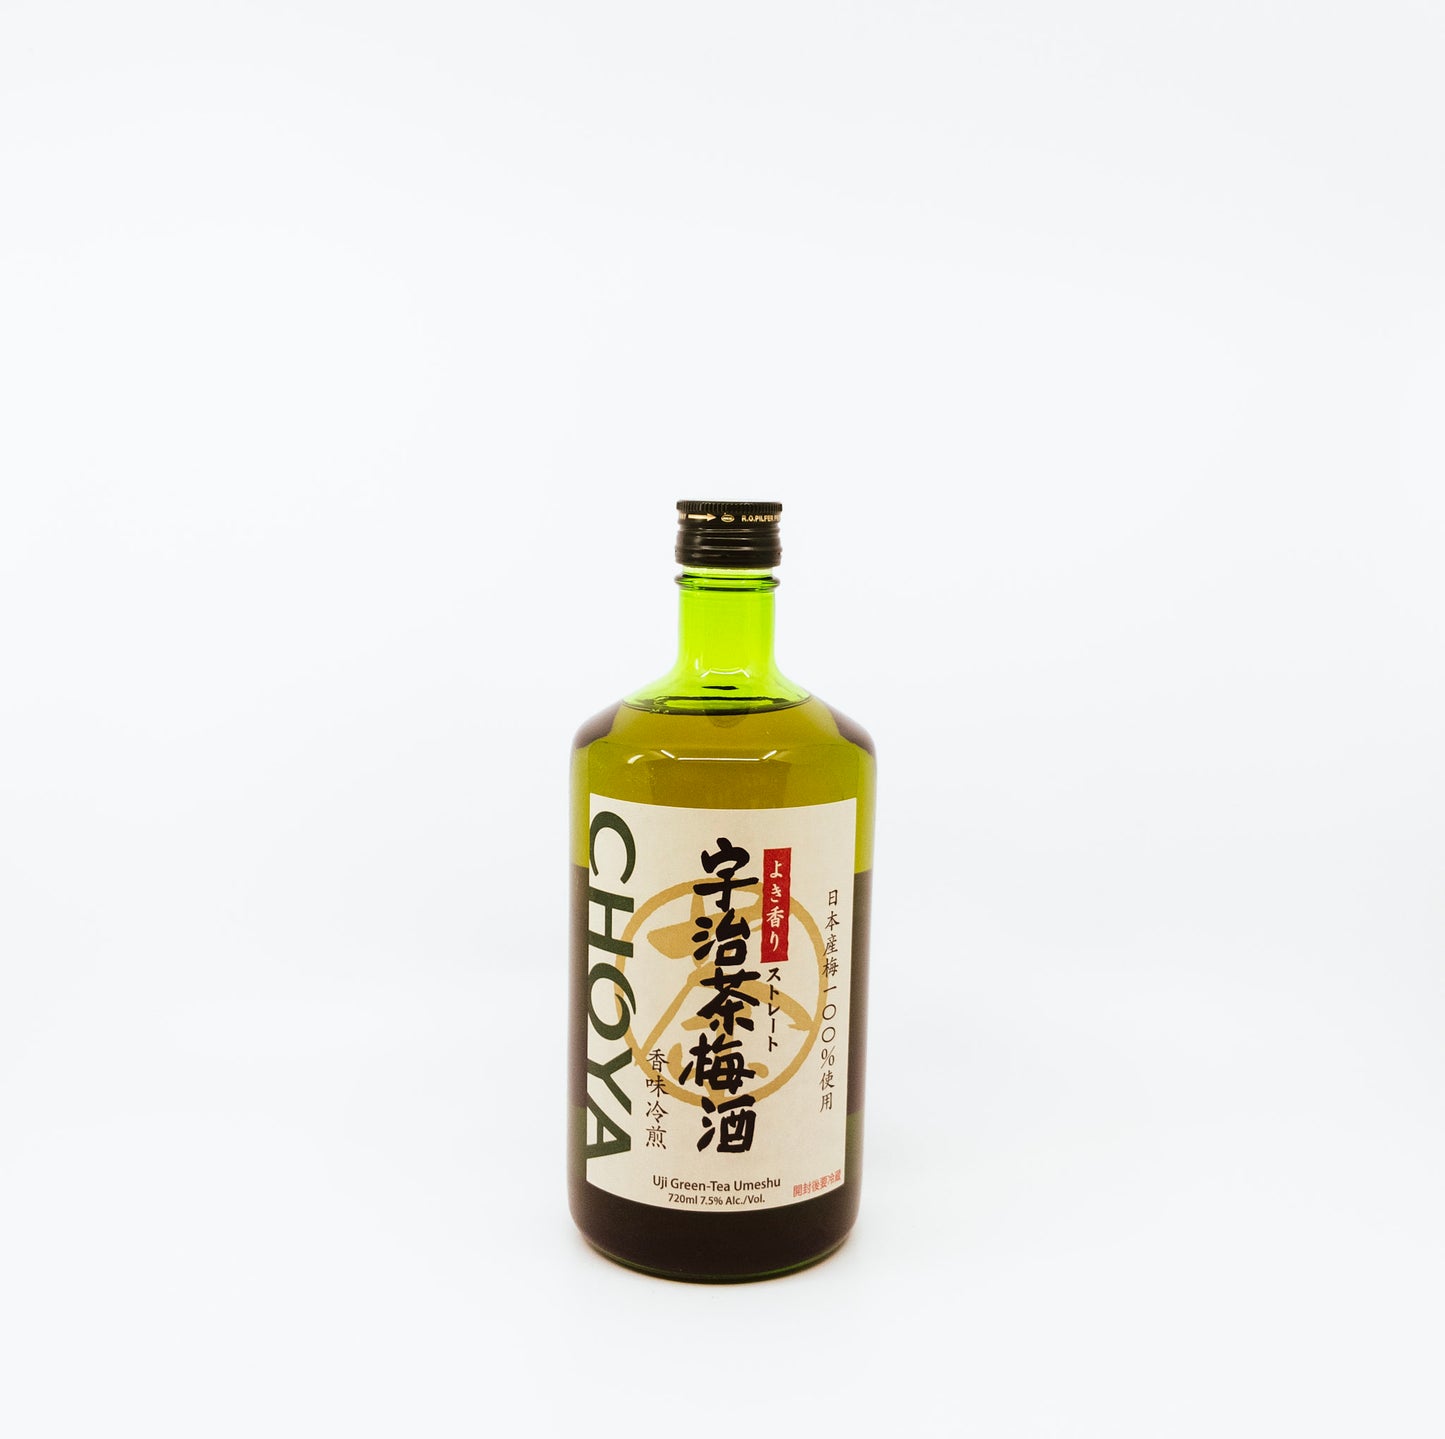 Choya "Uji Green Tea Umeshu" [720ml]